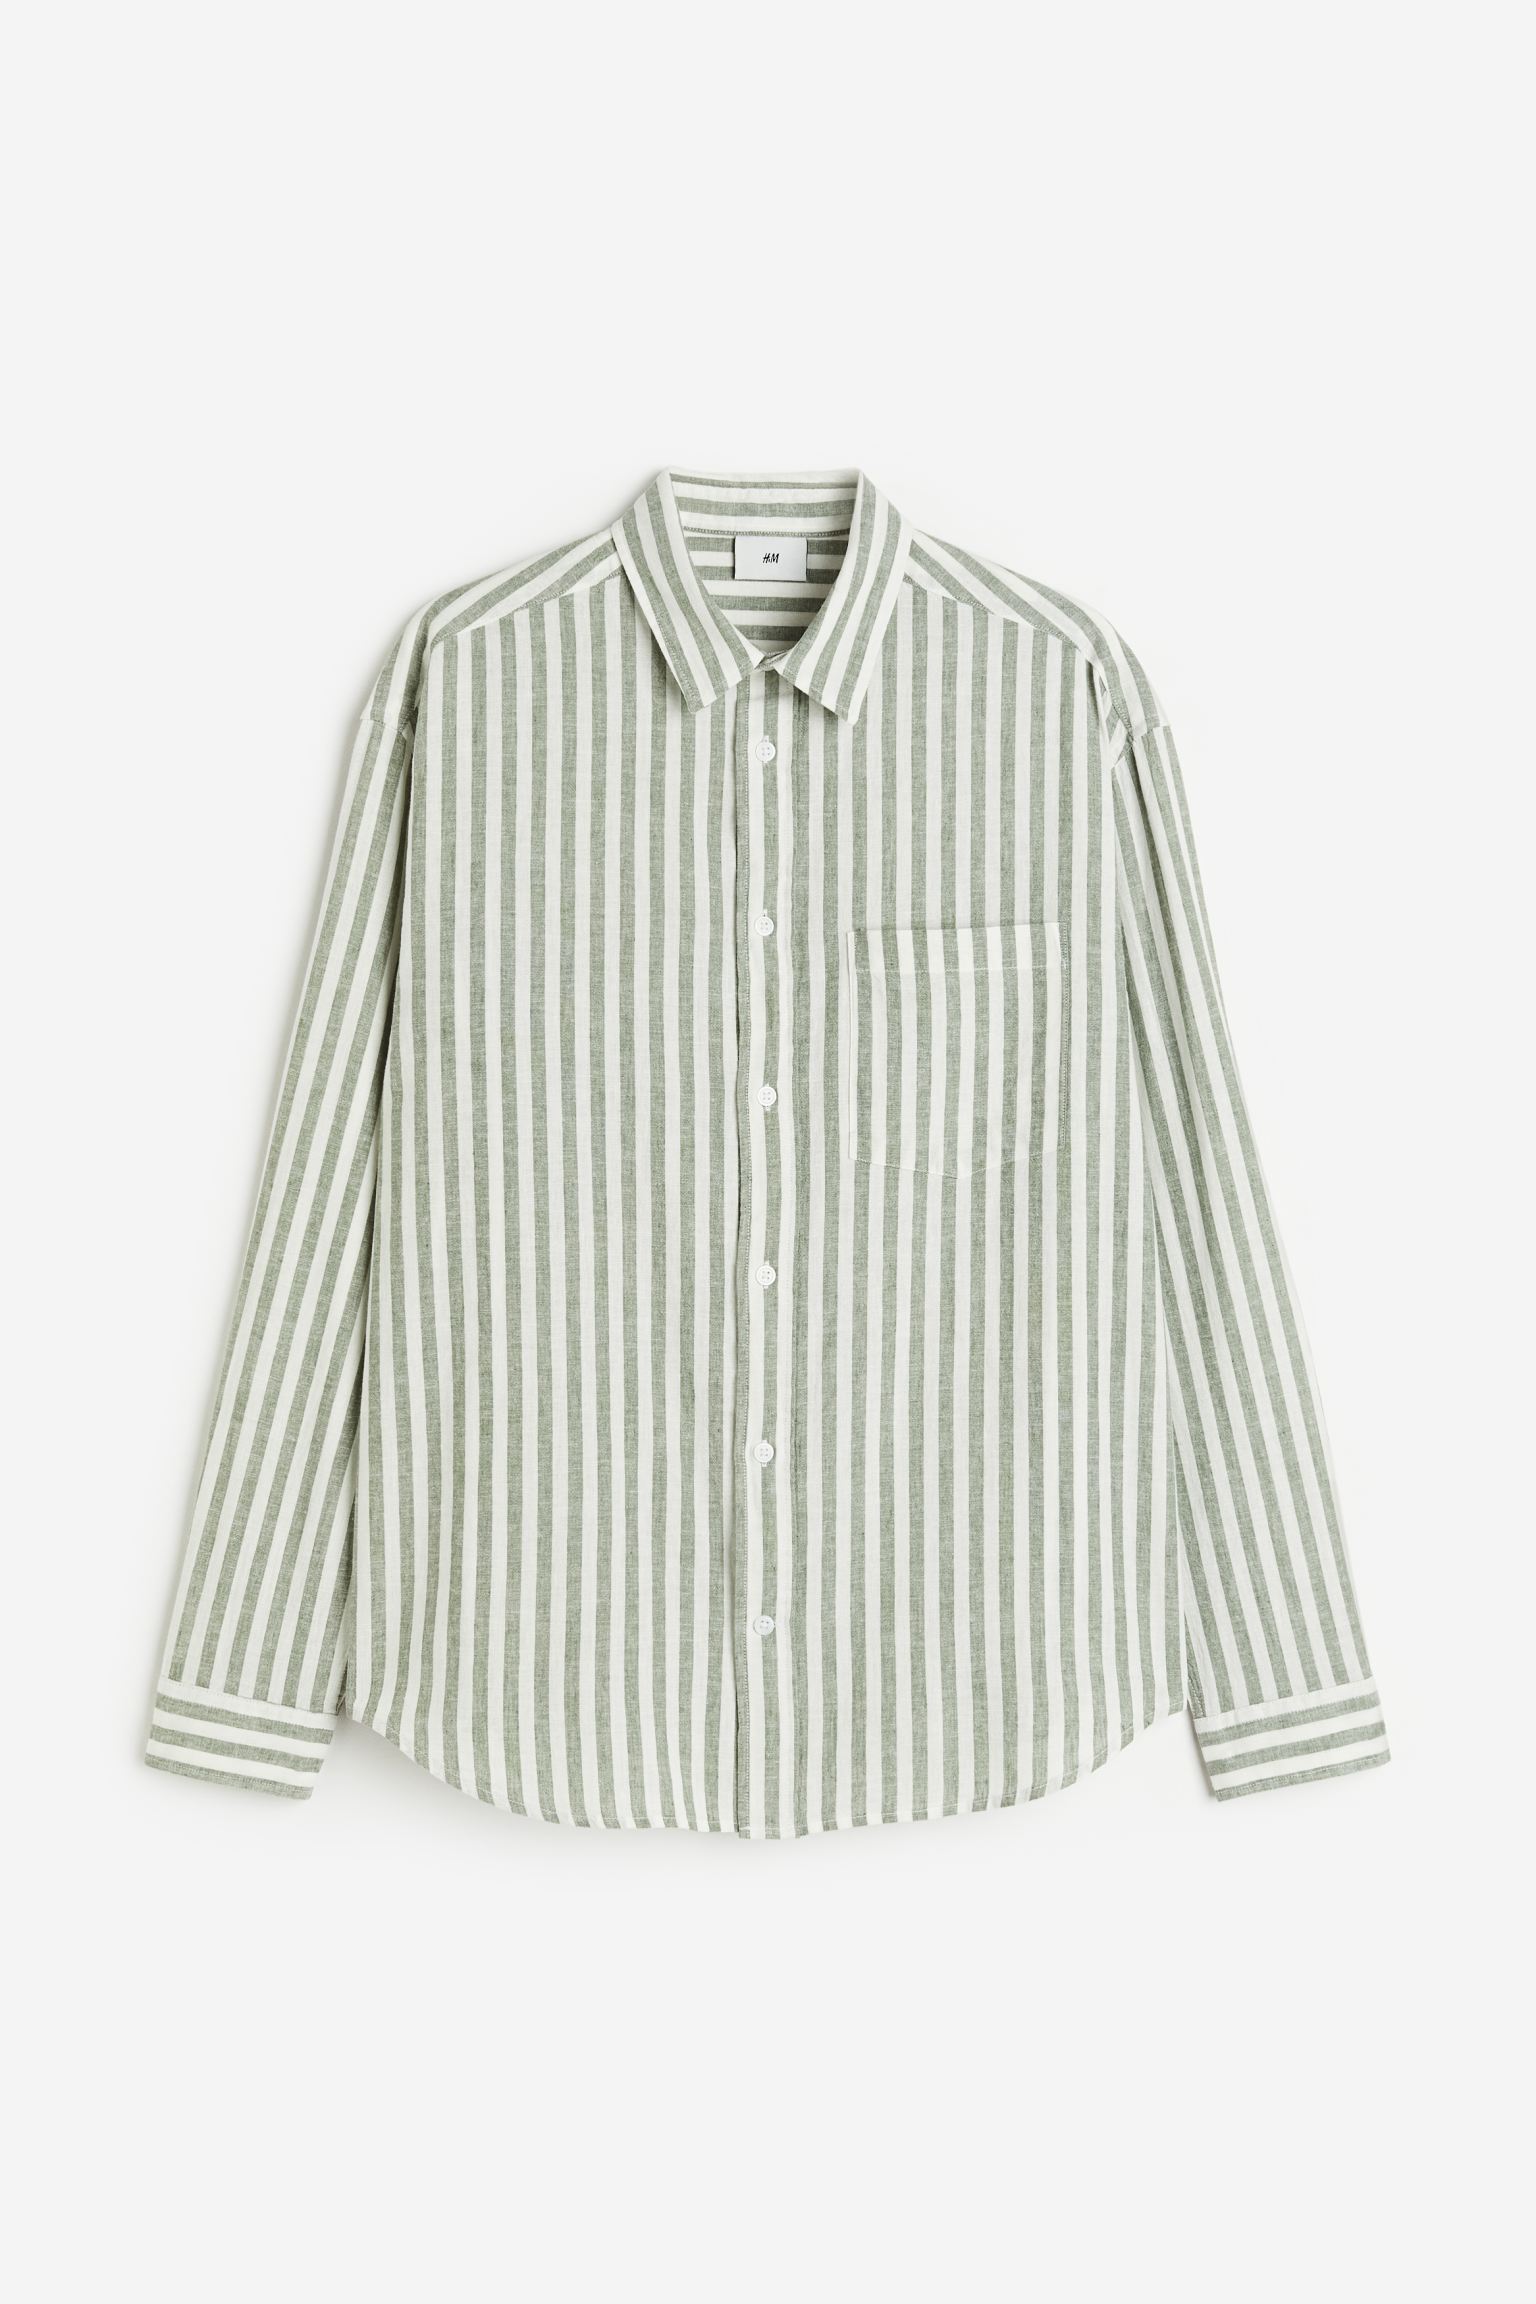 Рубашка мужская H&M 1160688006 зеленая S (доставка из-за рубежа)